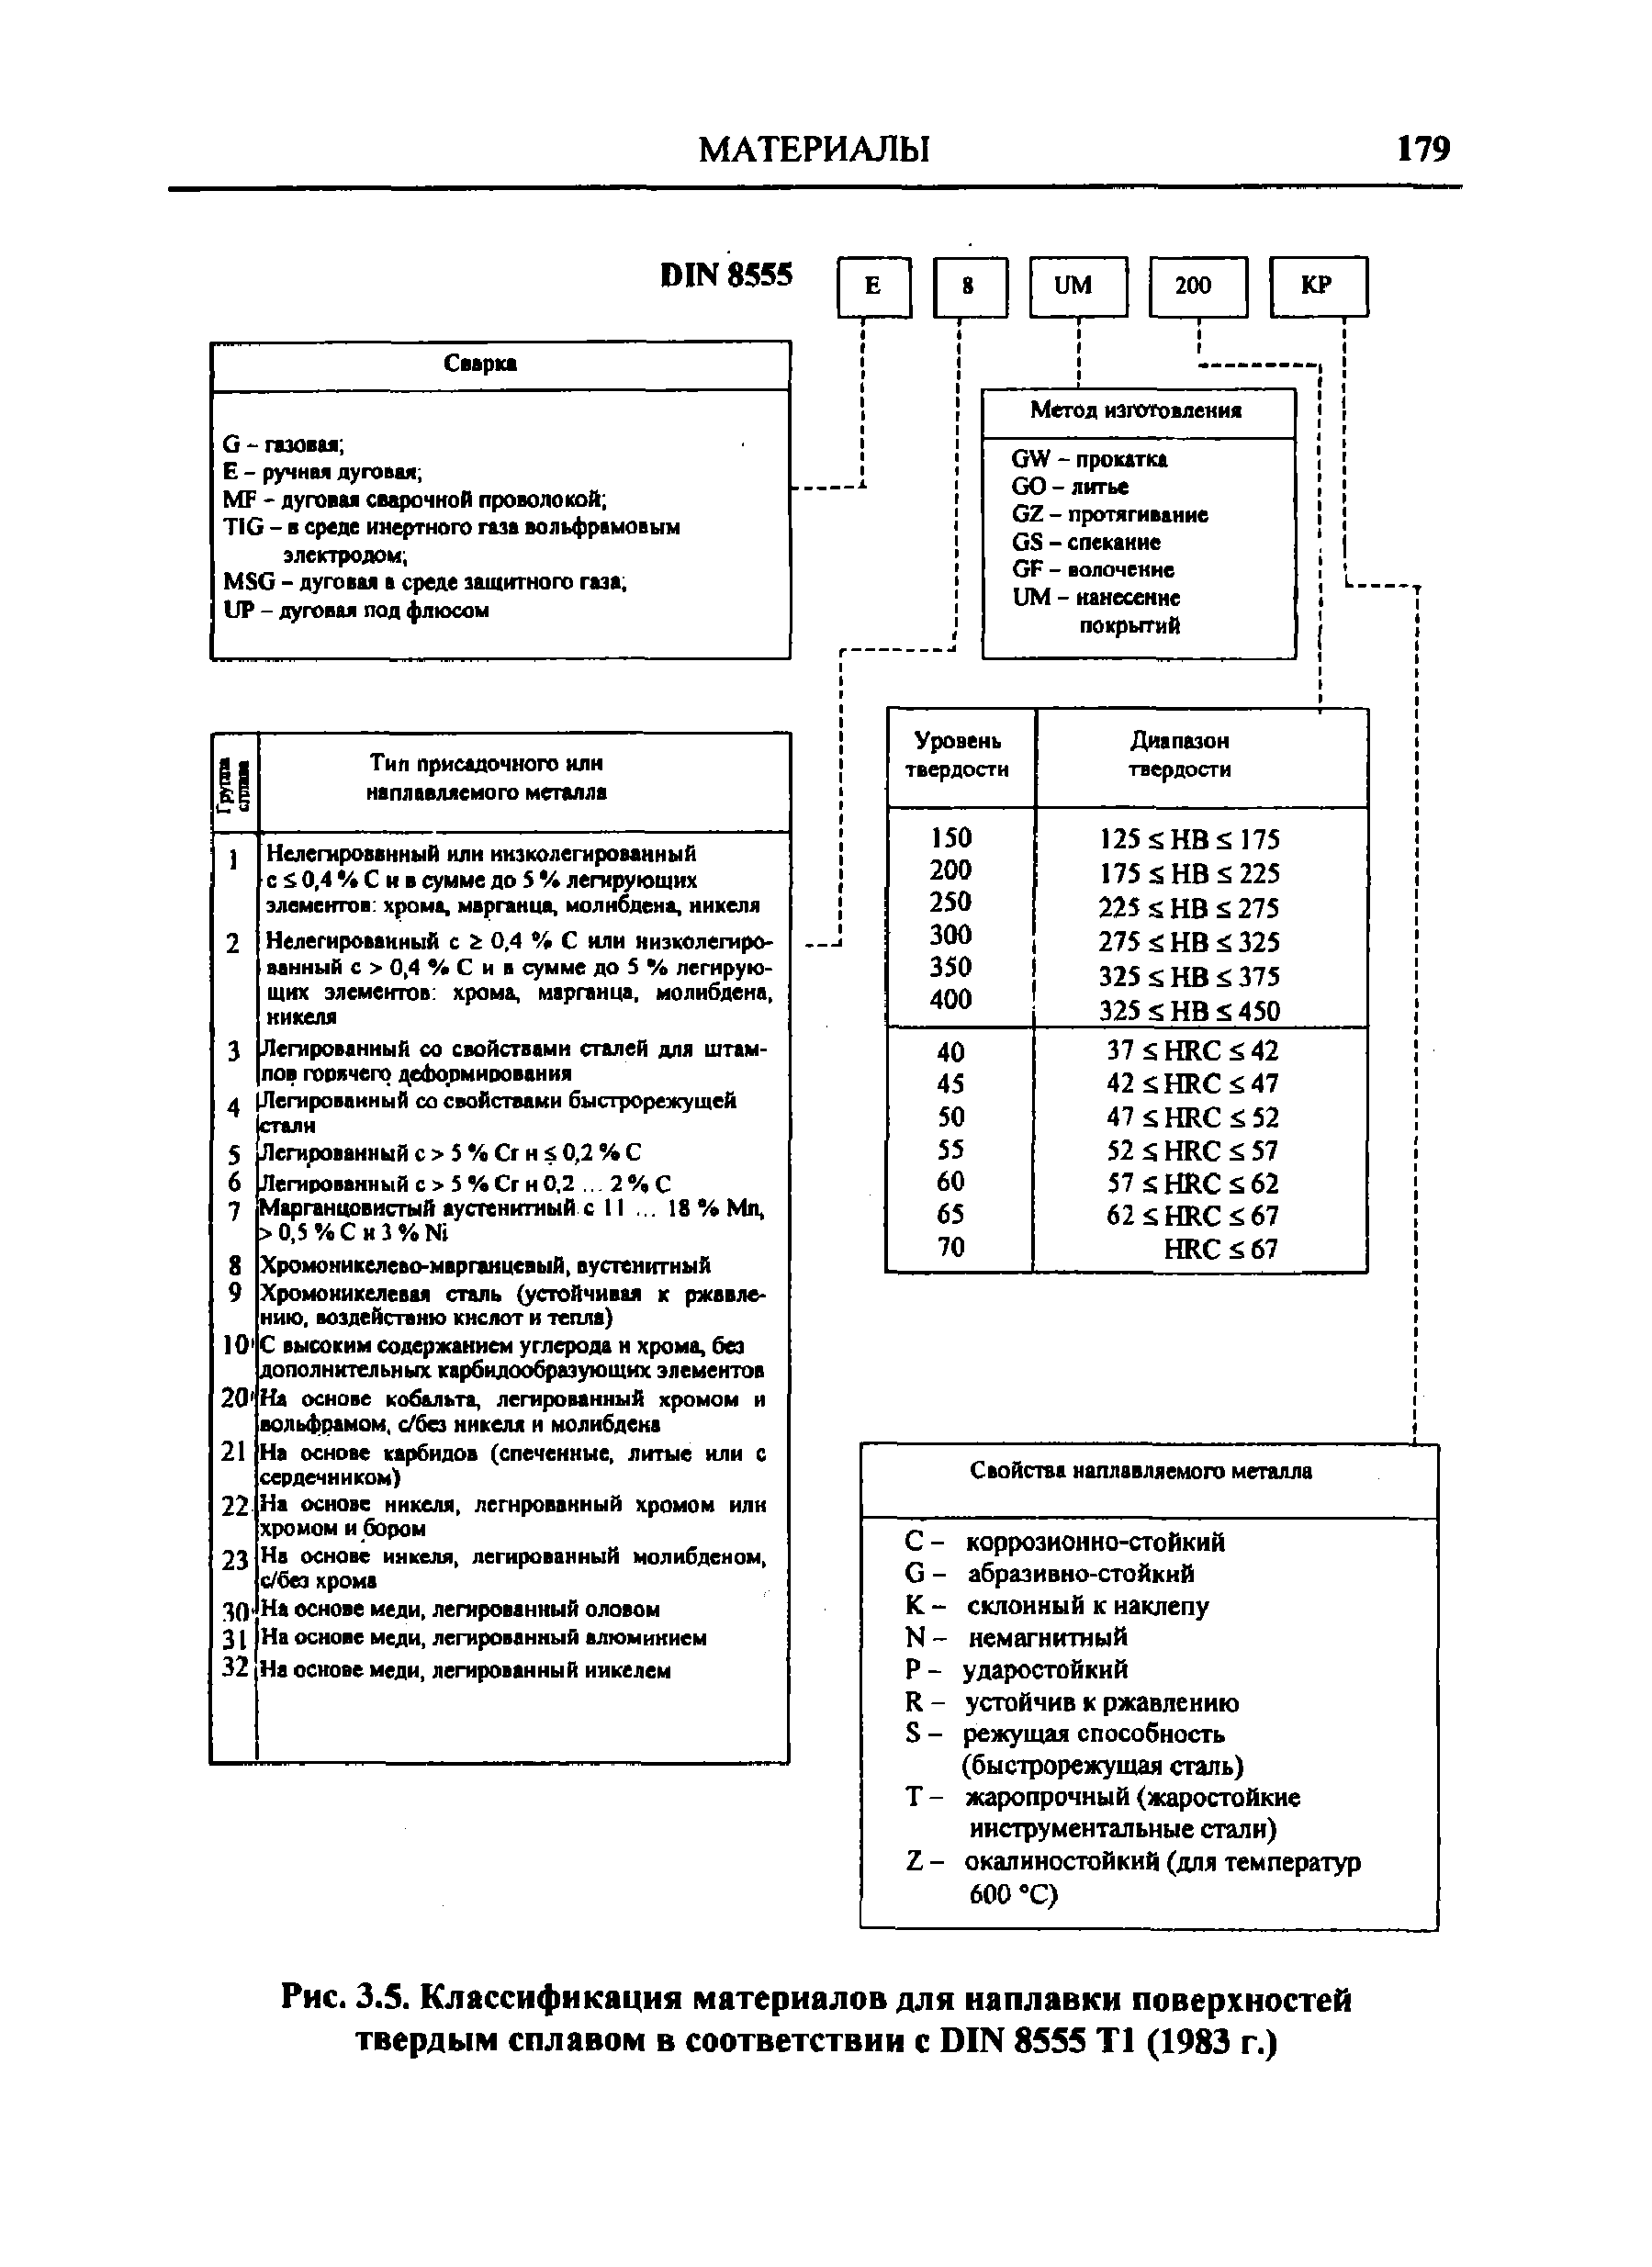 Рис. 3.5. Классификация материалов для наплавки поверхностей твердым сплавом в соответствии с DIN 8555 Т1 (1983 г.)
